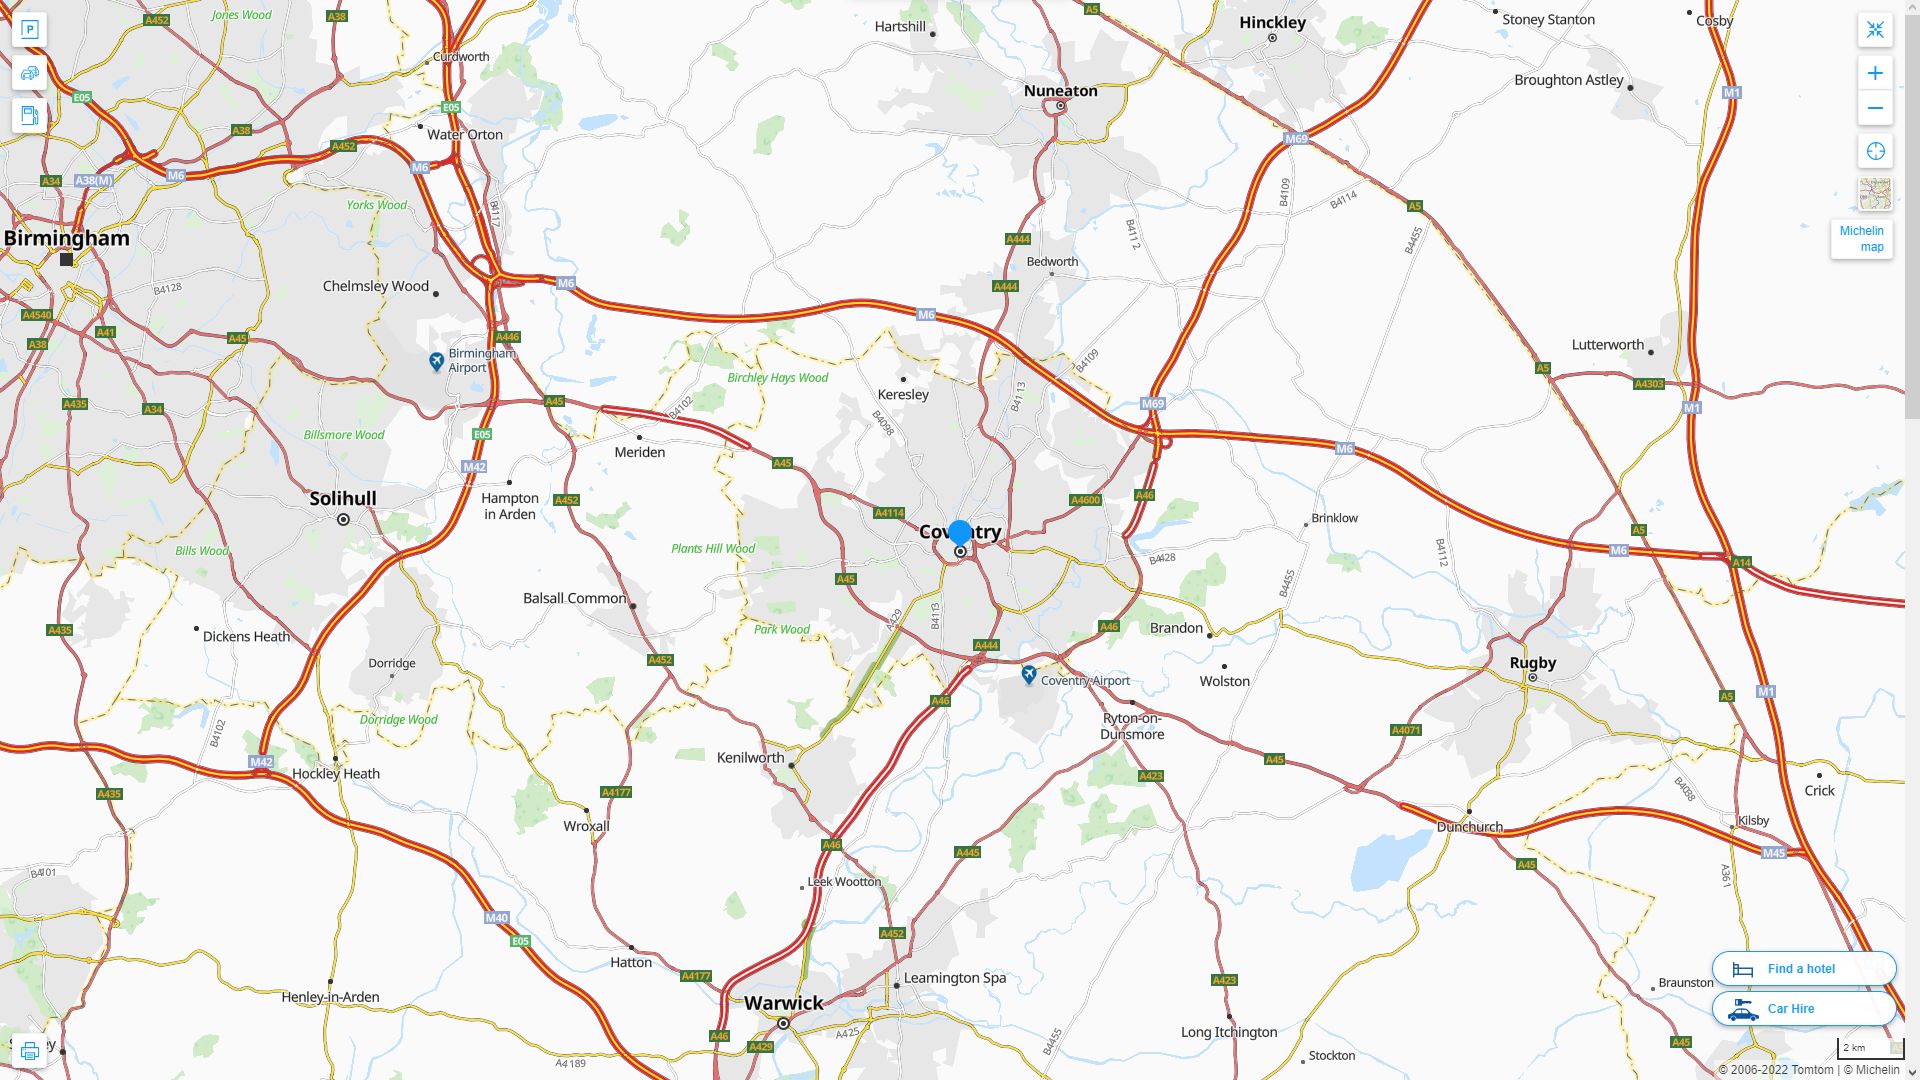 Coventry Royaume Uni Autoroute et carte routiere